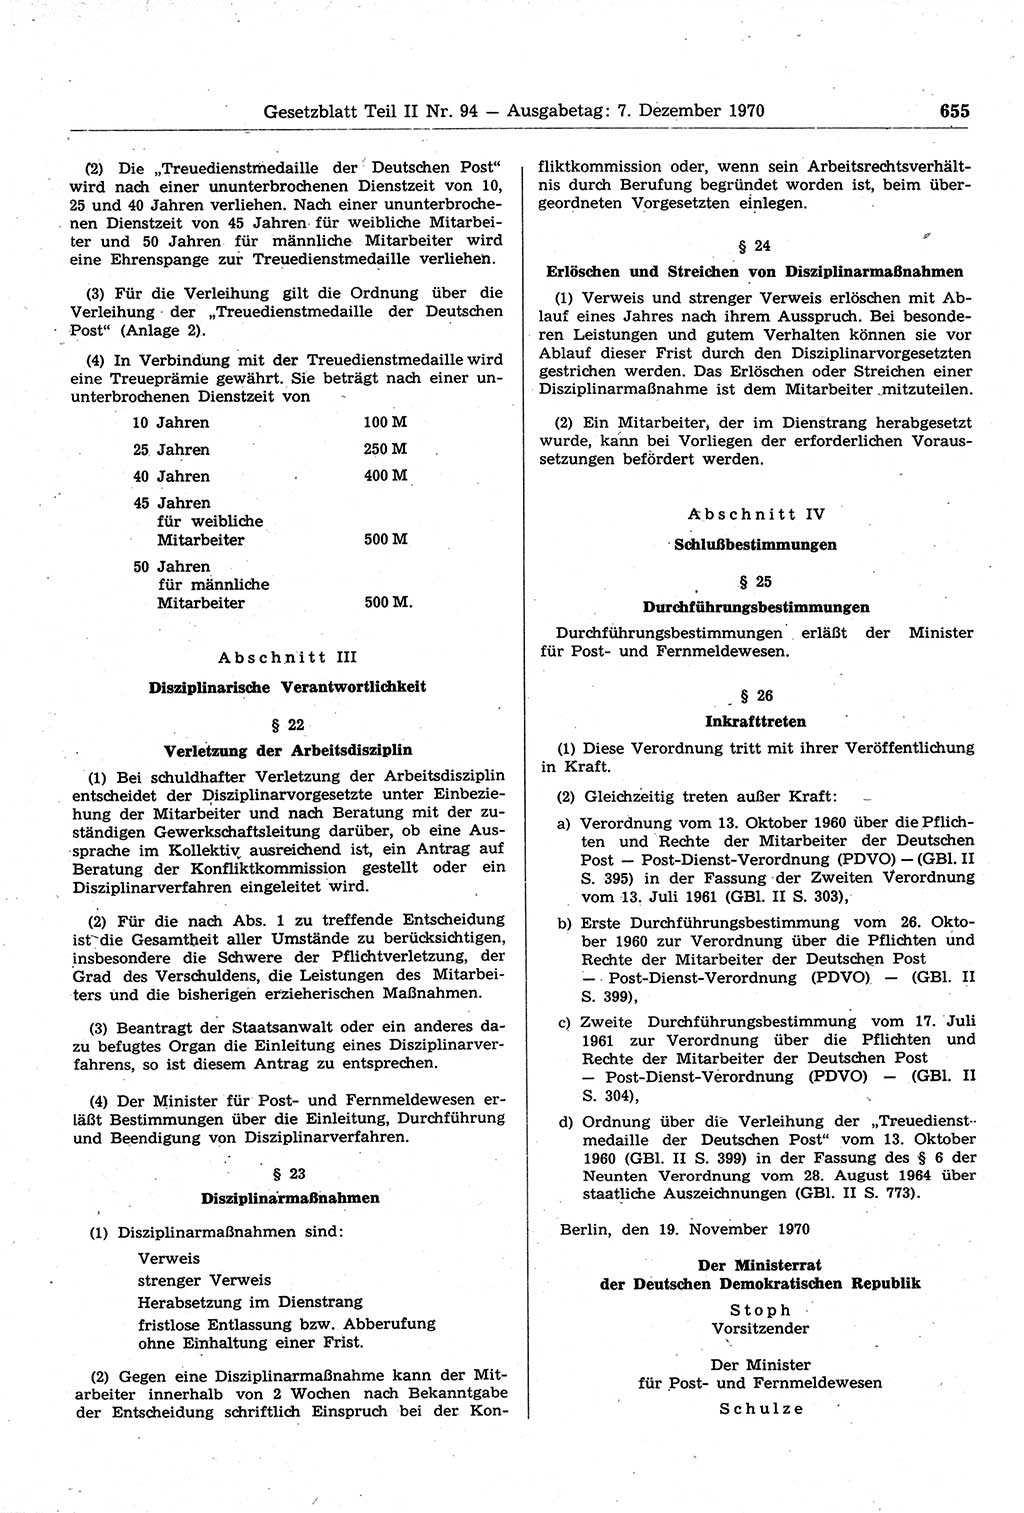 Gesetzblatt (GBl.) der Deutschen Demokratischen Republik (DDR) Teil ⅠⅠ 1970, Seite 655 (GBl. DDR ⅠⅠ 1970, S. 655)